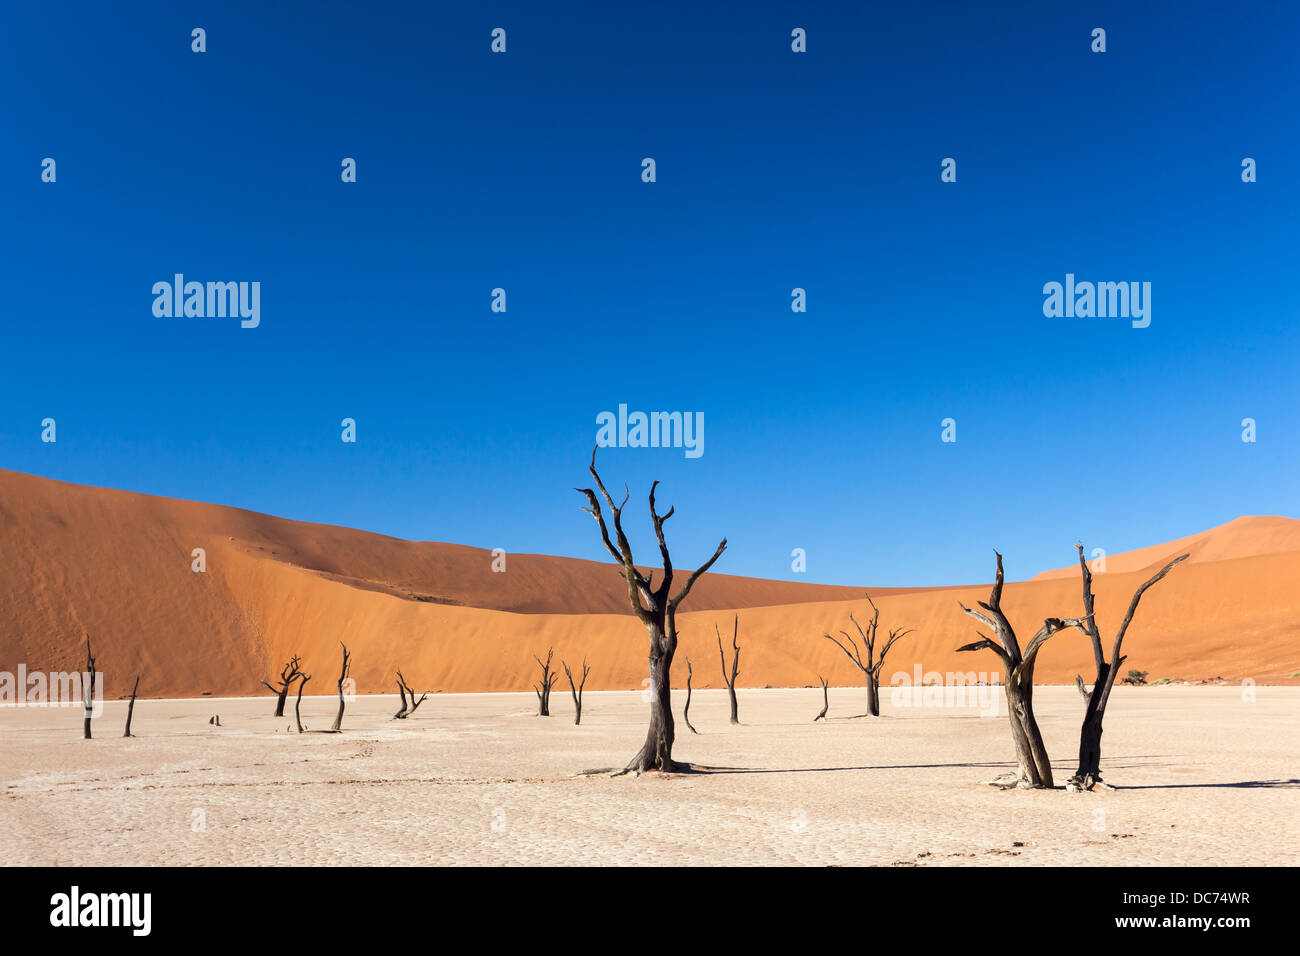 Dead Vlei, Namib Desert, Namibia, April 2013 Stock Photo